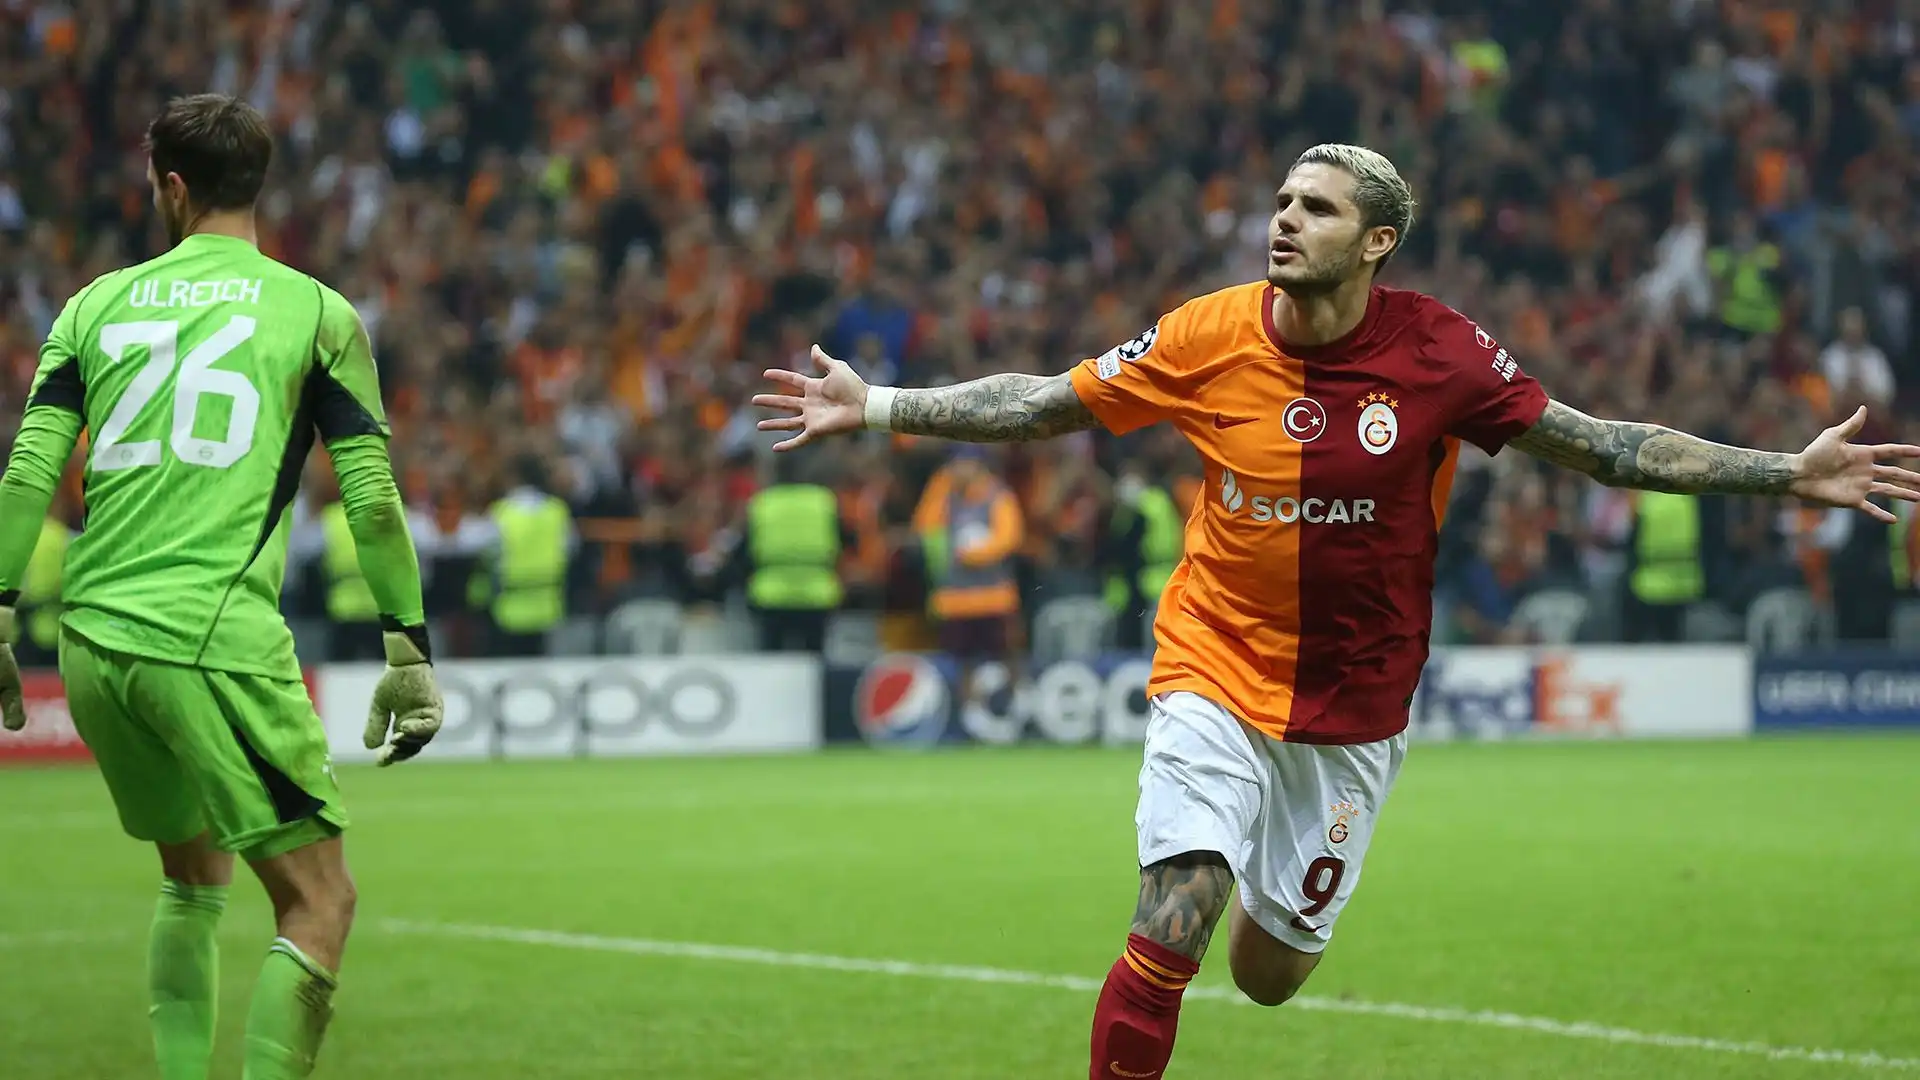 Con il Galatasaray ha finora collezionato 38 gol e 11 assist in 46 partite giocate